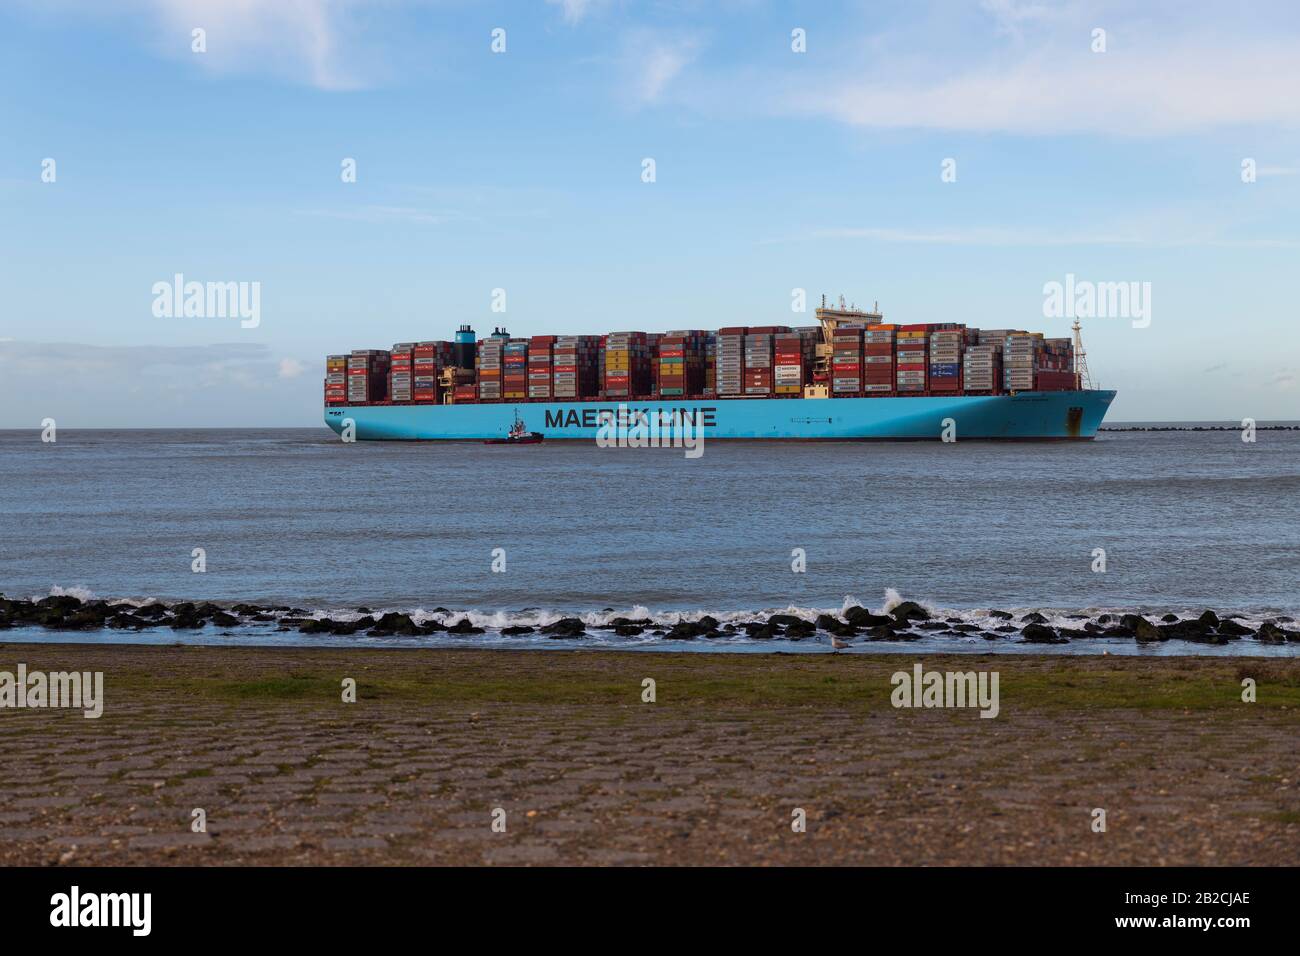 Rotterdam,Holland,01-marzo-2020:una delle più grandi navi portacontainer che entrano a rotterdam, l'importazione di container è ridotta dal virus corona COVID-19, normale queste navi entrano più spesso Foto Stock